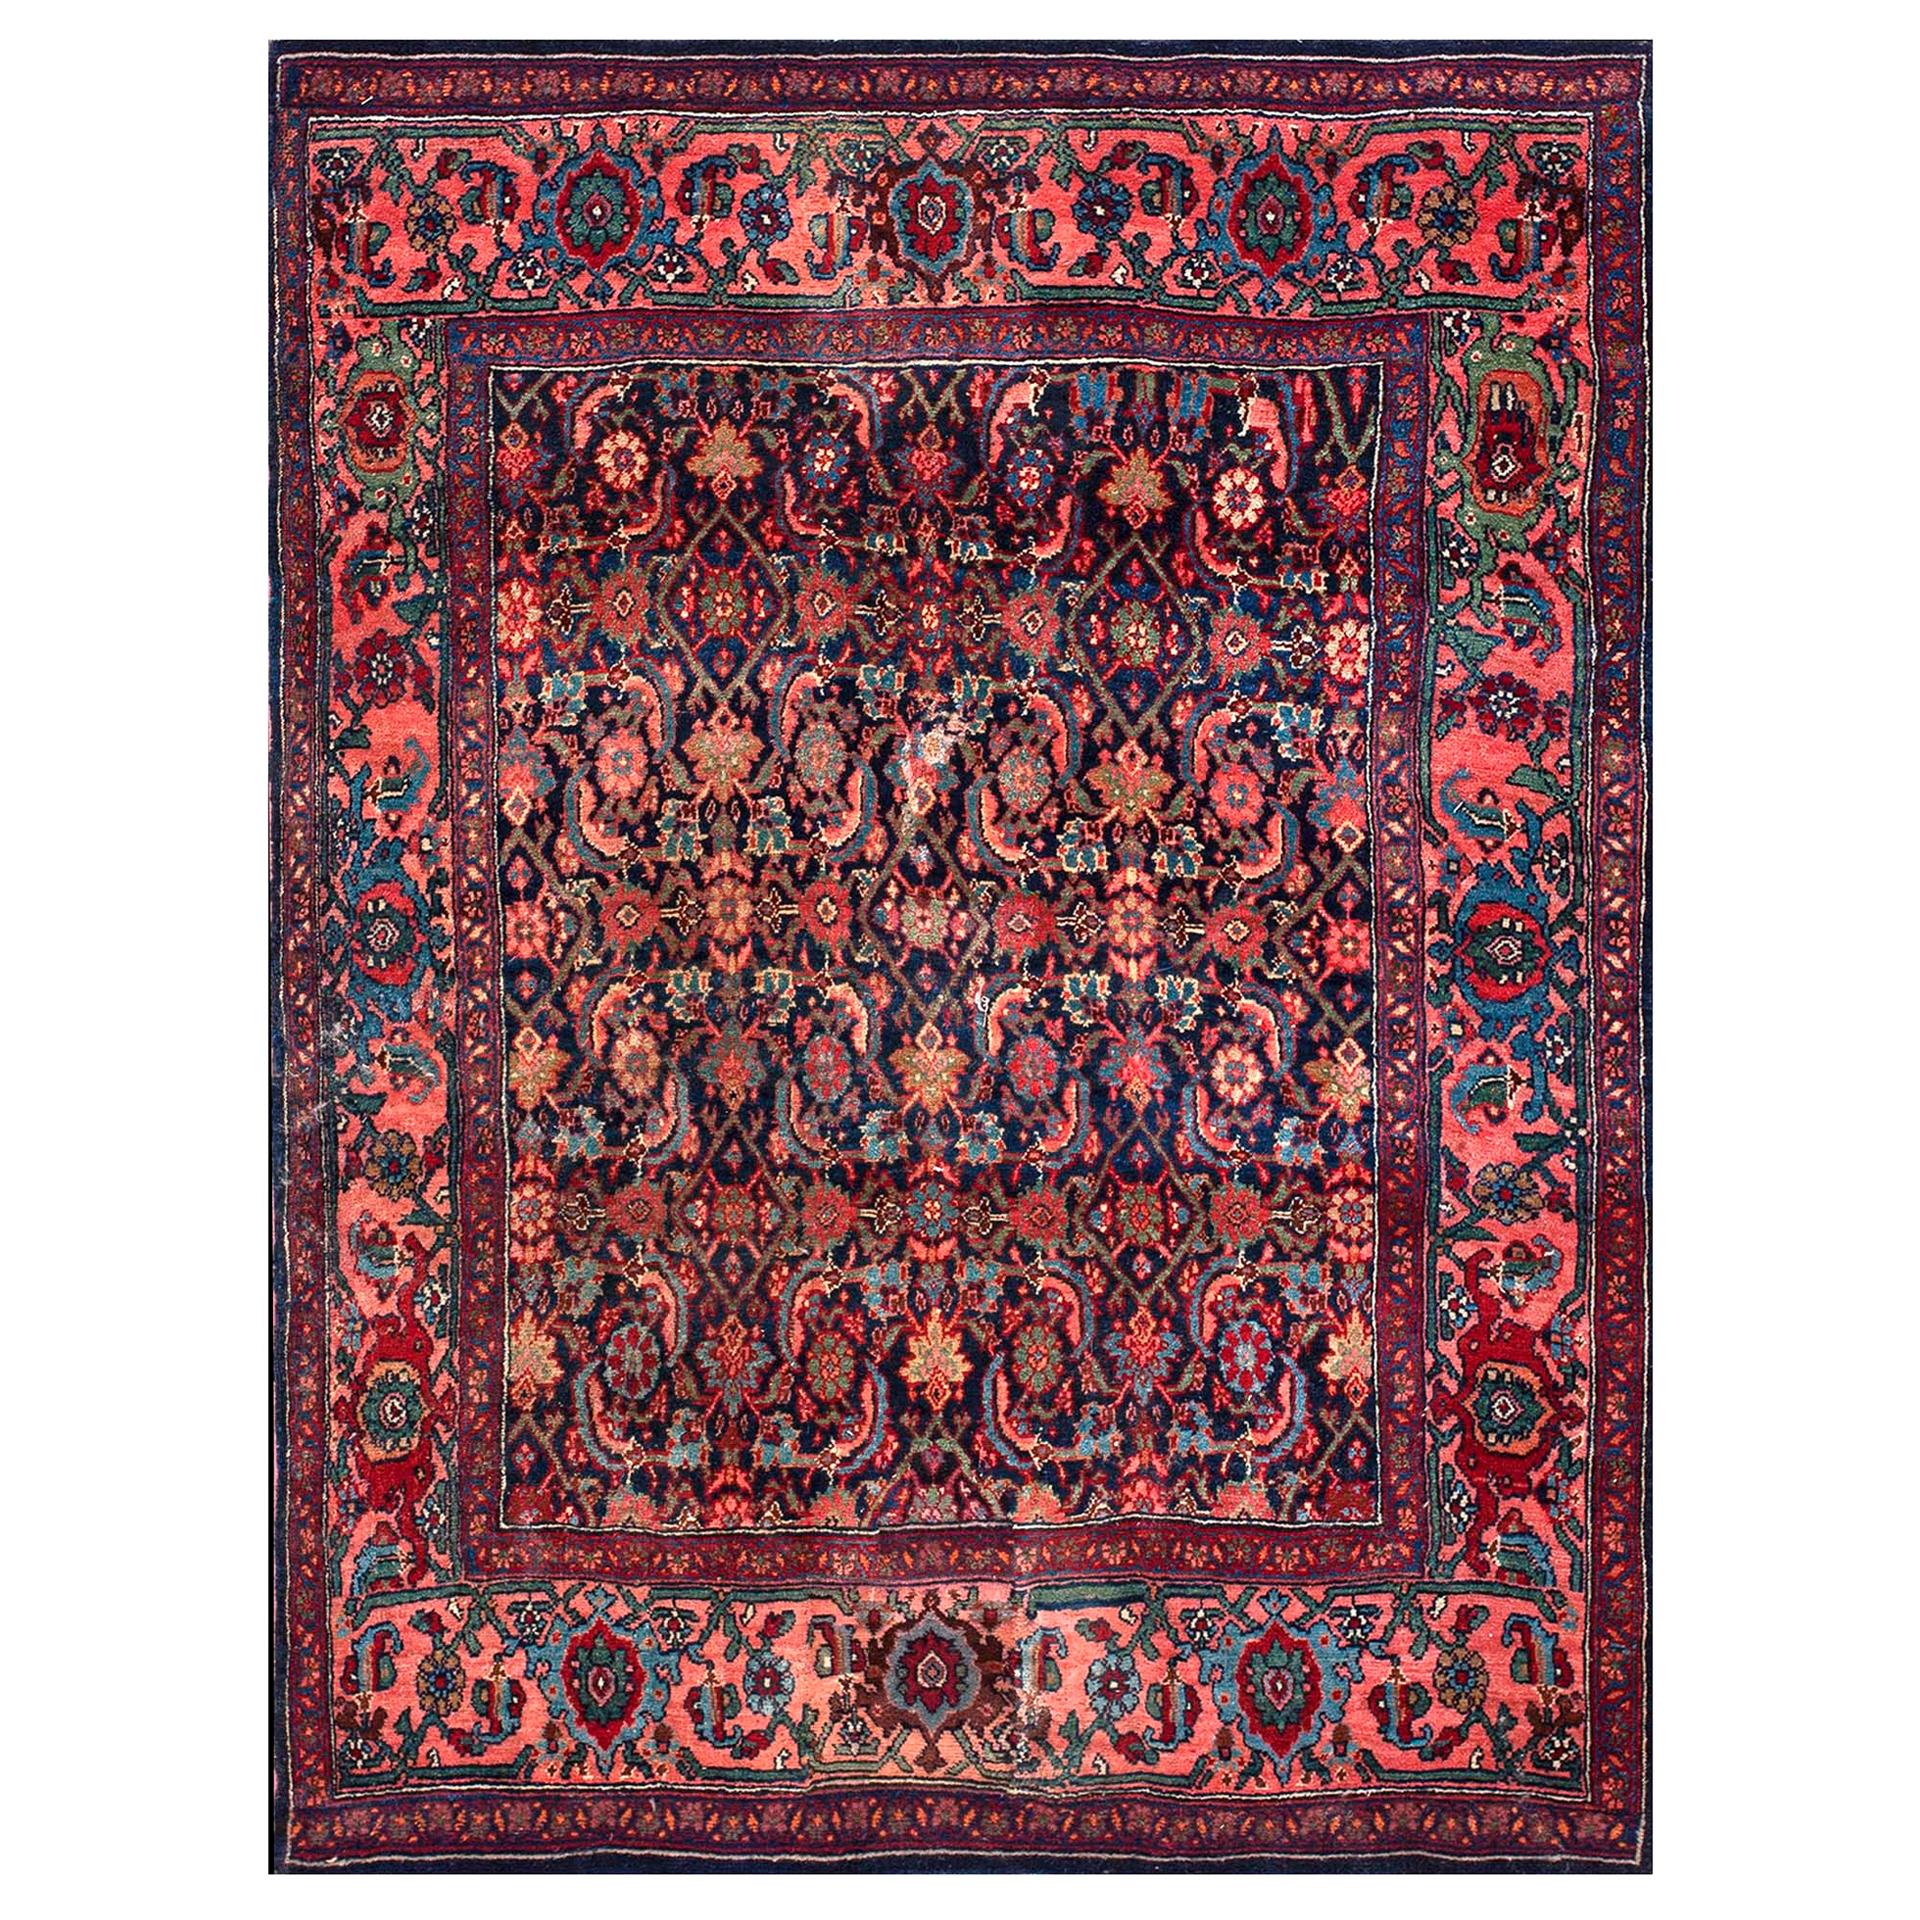 Frühes 20. Jahrhundert W. Persisch Bijar Teppich ( 4' x 5'3" - 122 x 160 )